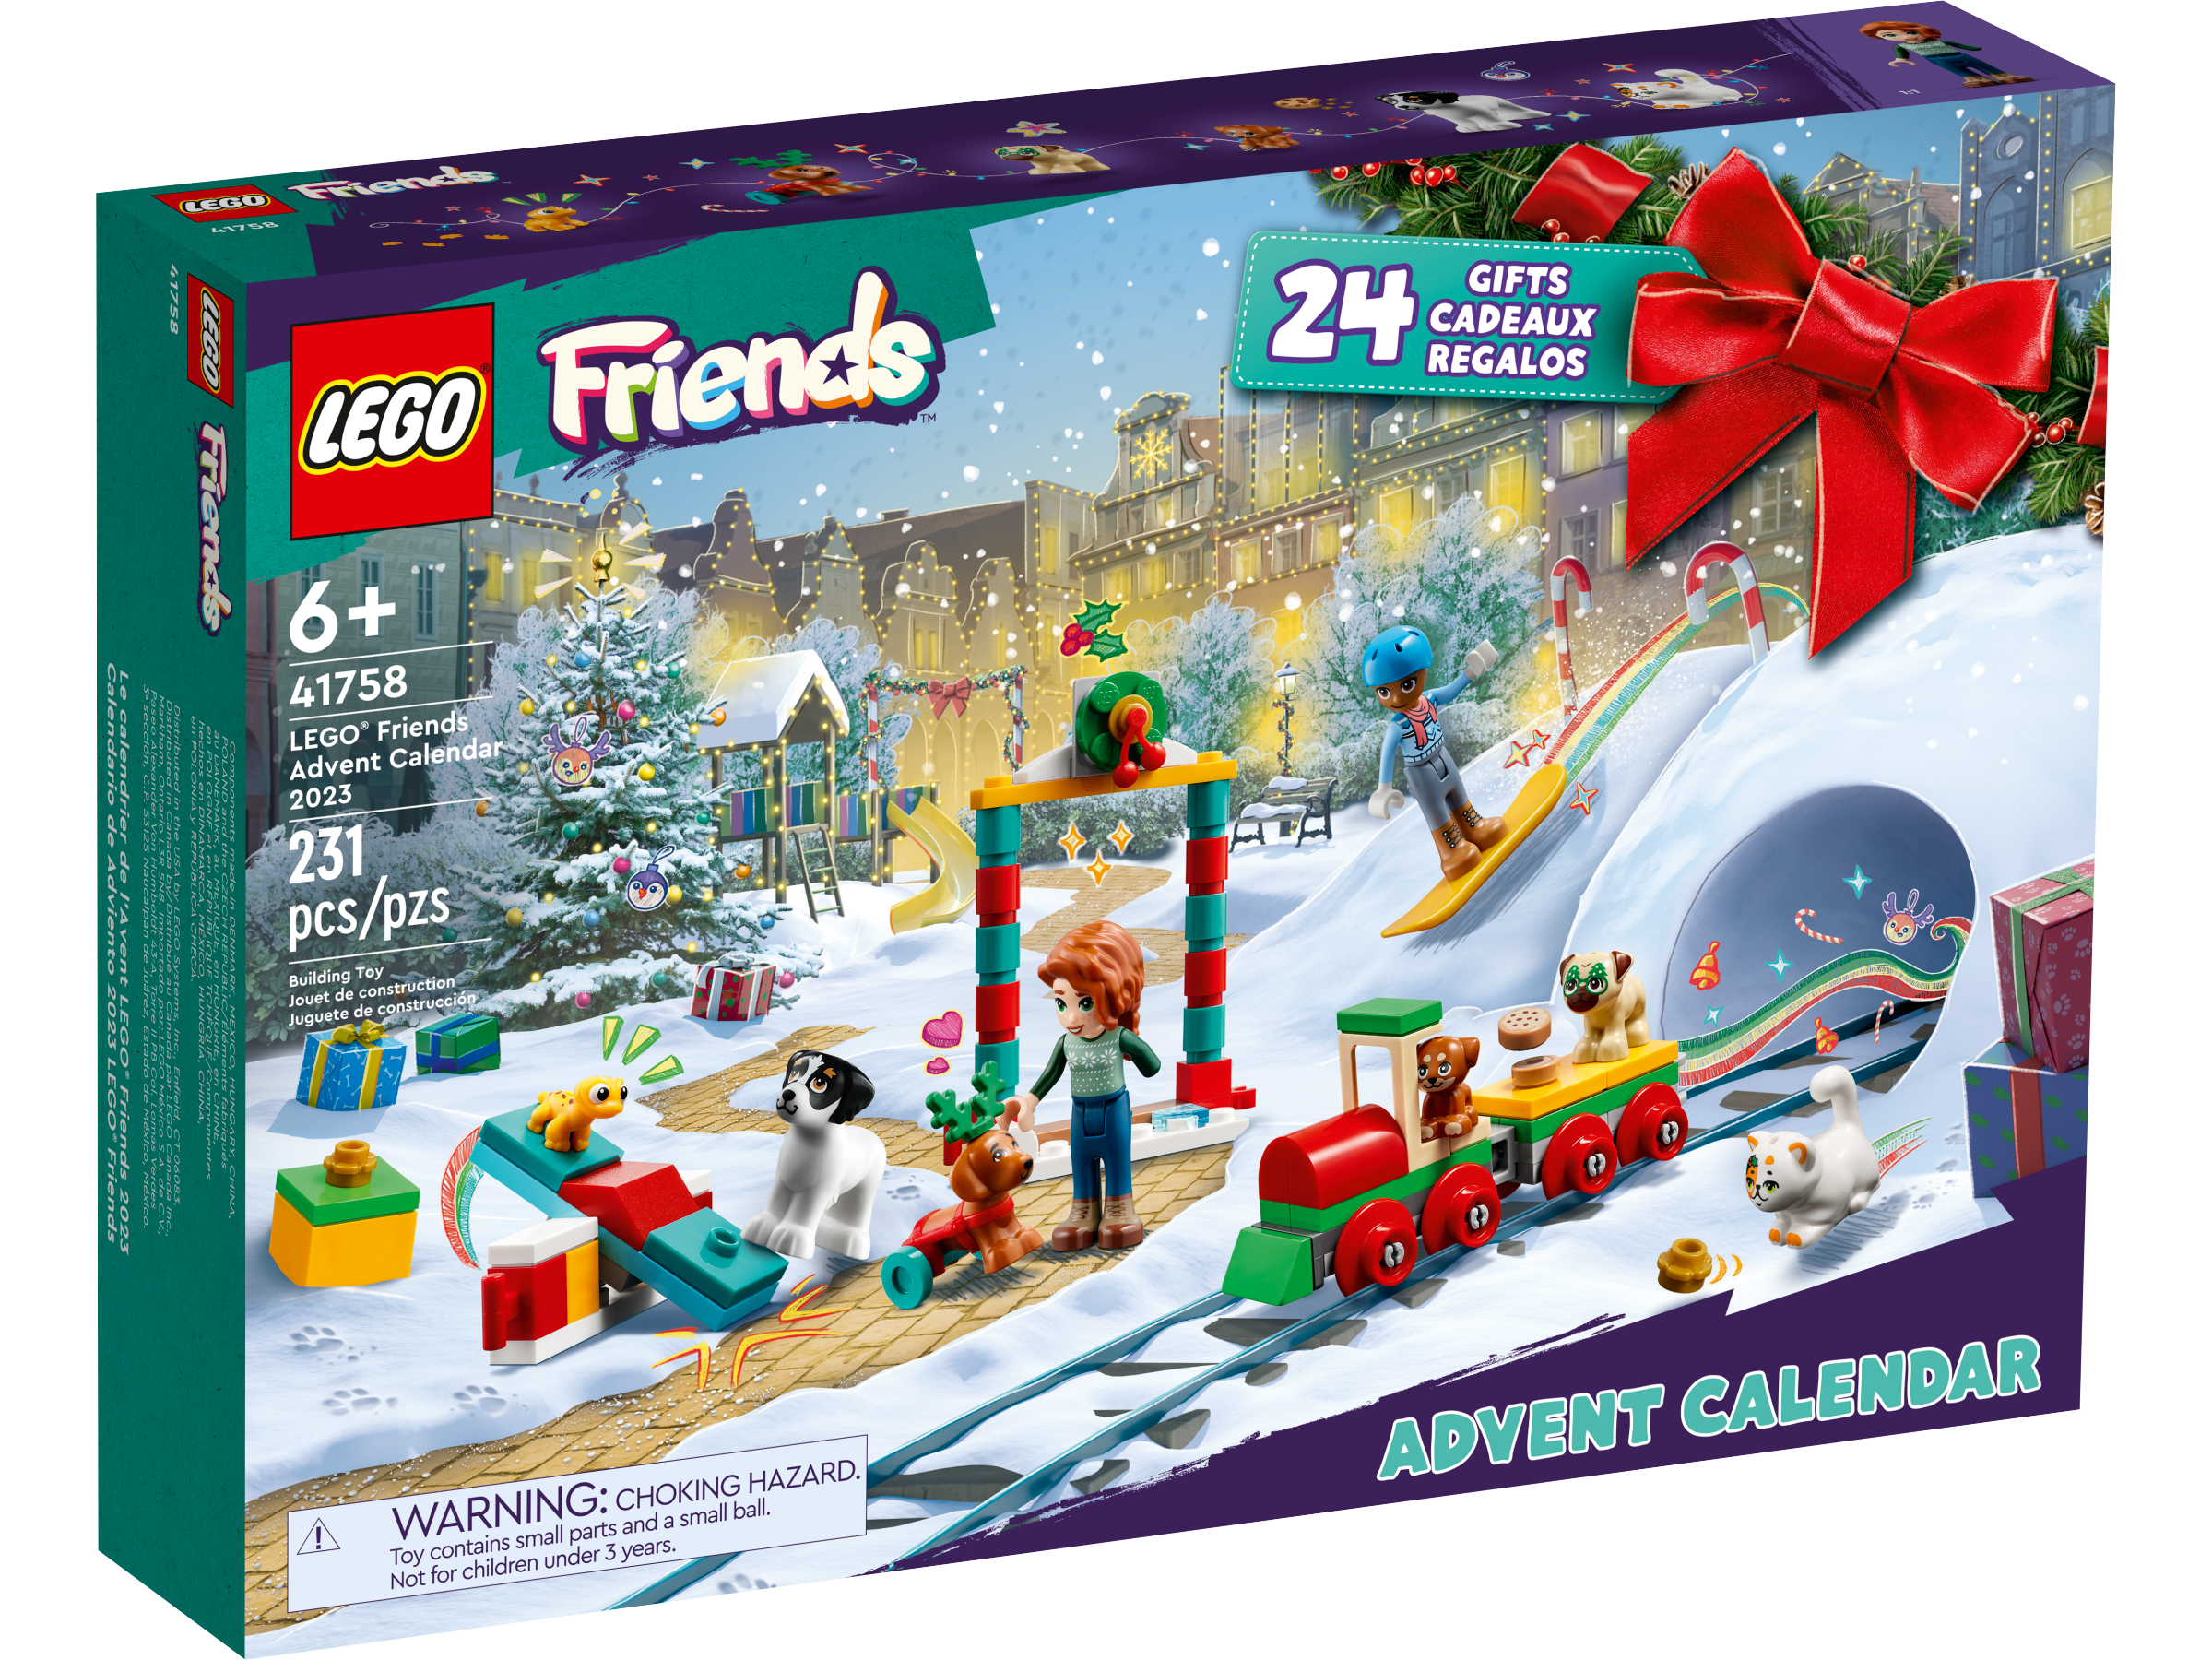 LEGO® Friends Advent Calendar 2023 41758, Friends